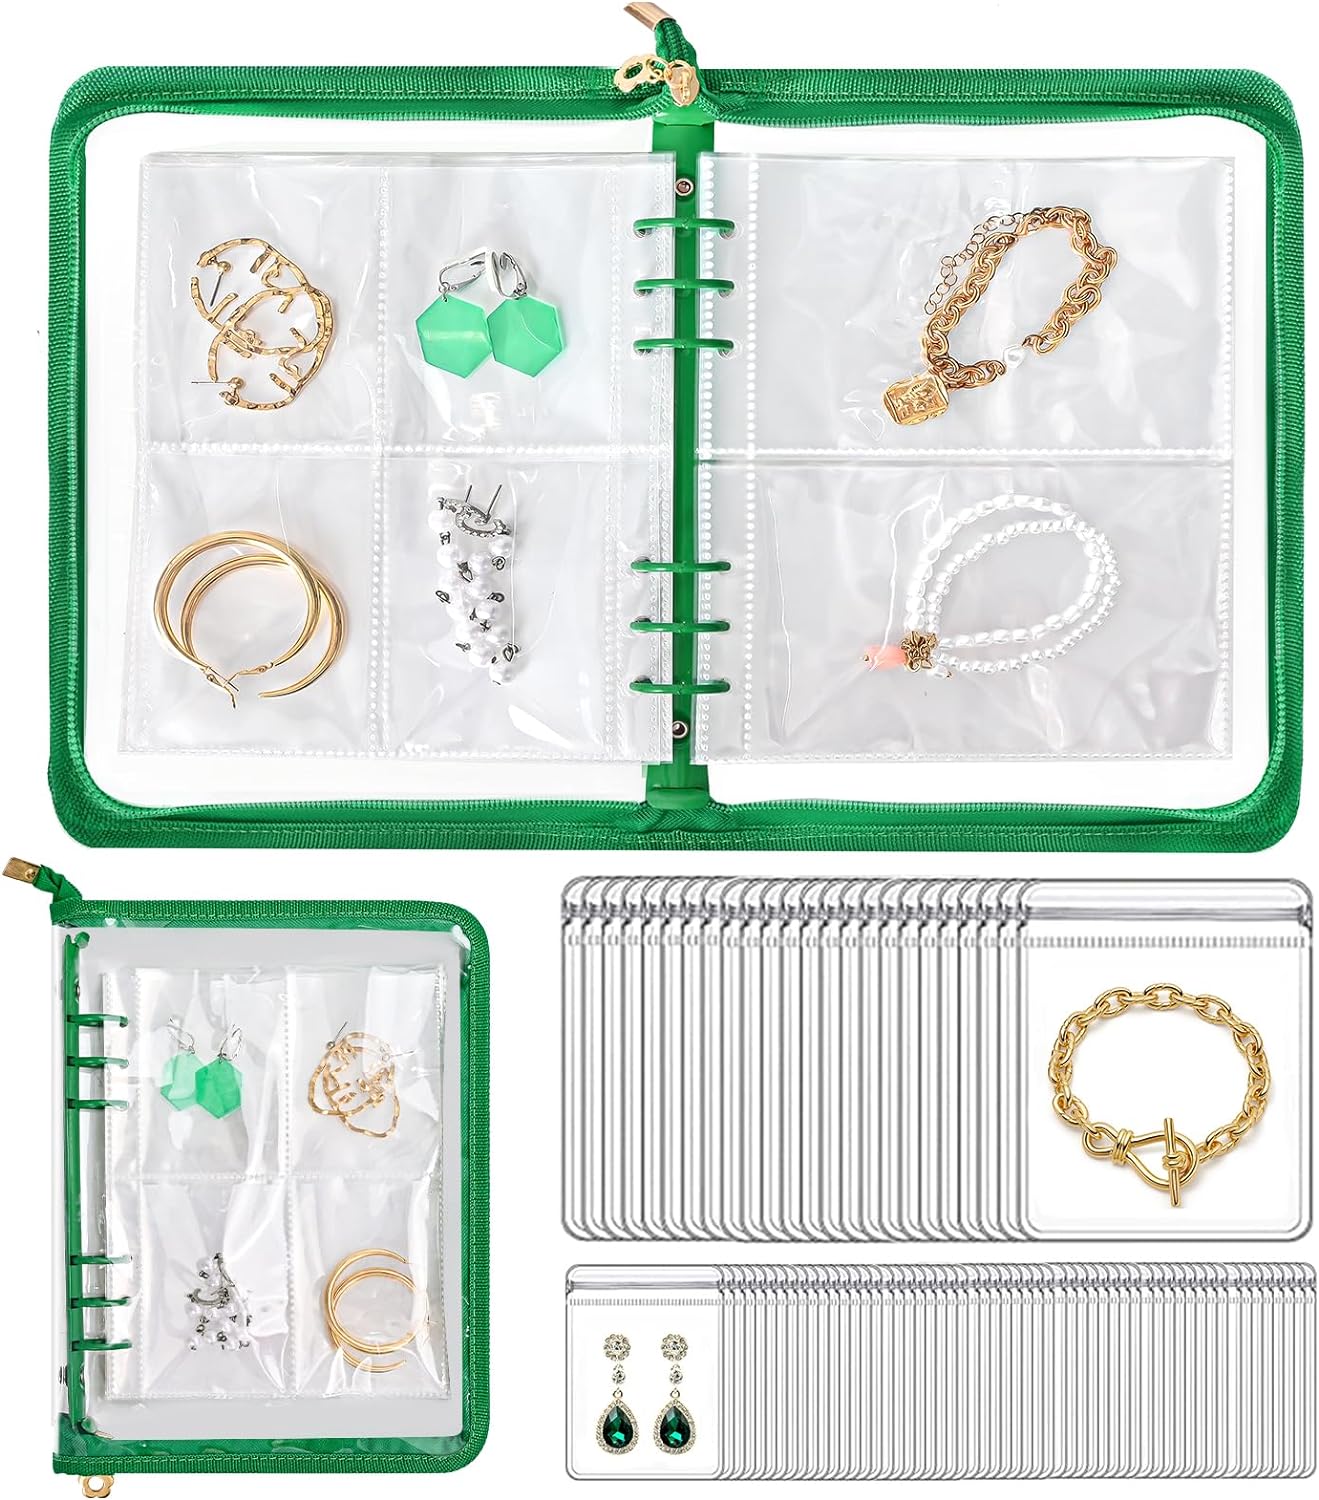 Portable Jewelry Storage Display with Zipper Pockets